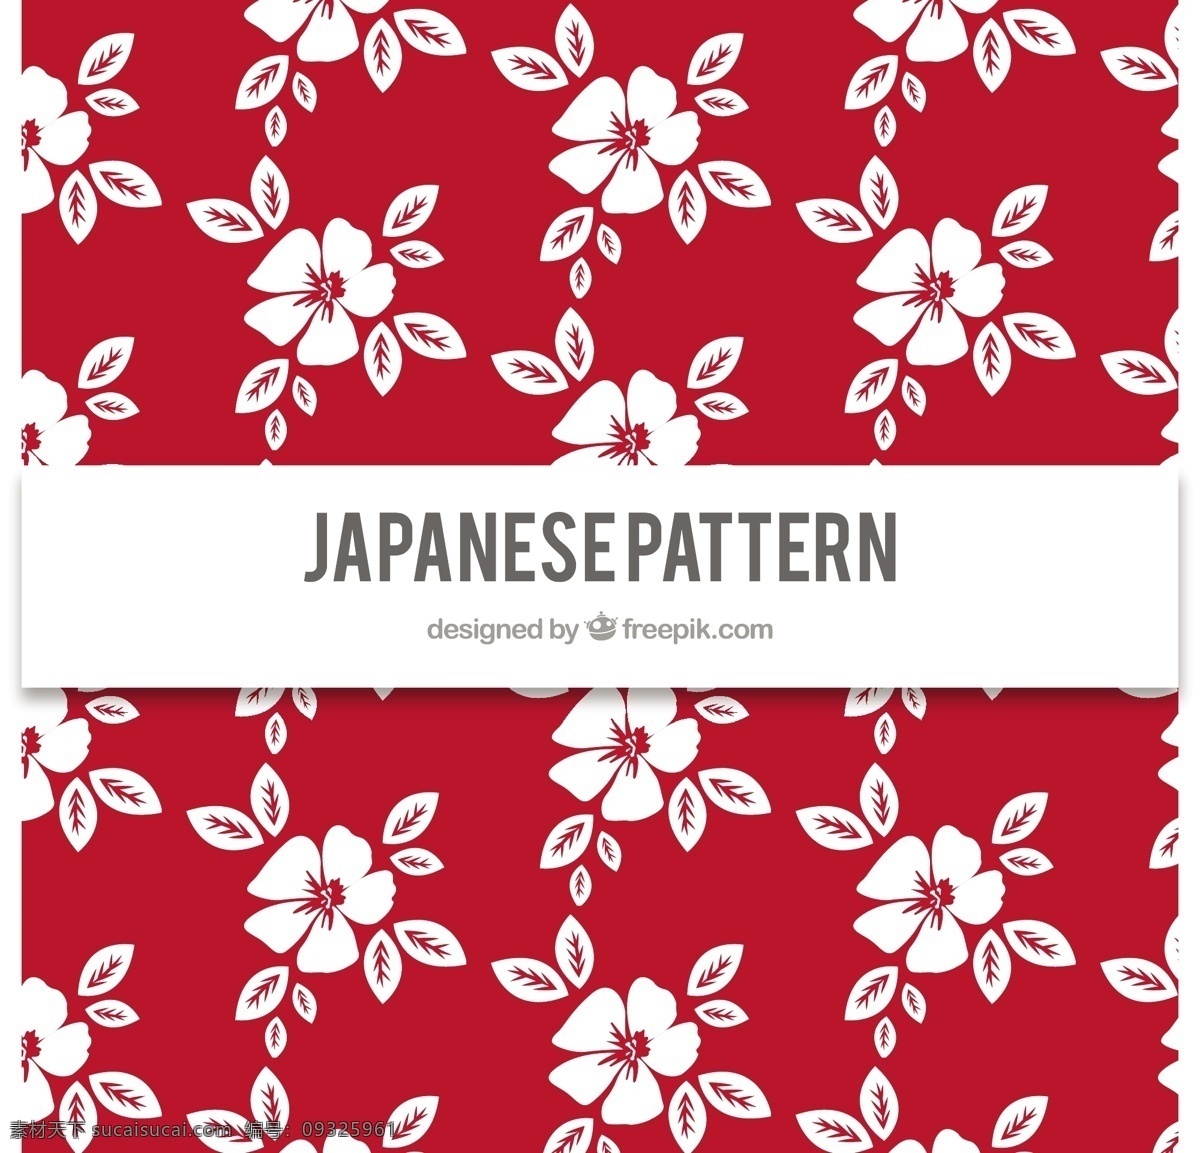 手绘 可爱 日本 花卉 红色 图案 手绘花卉图案 花卉图案 花卉背景 装饰 墙纸